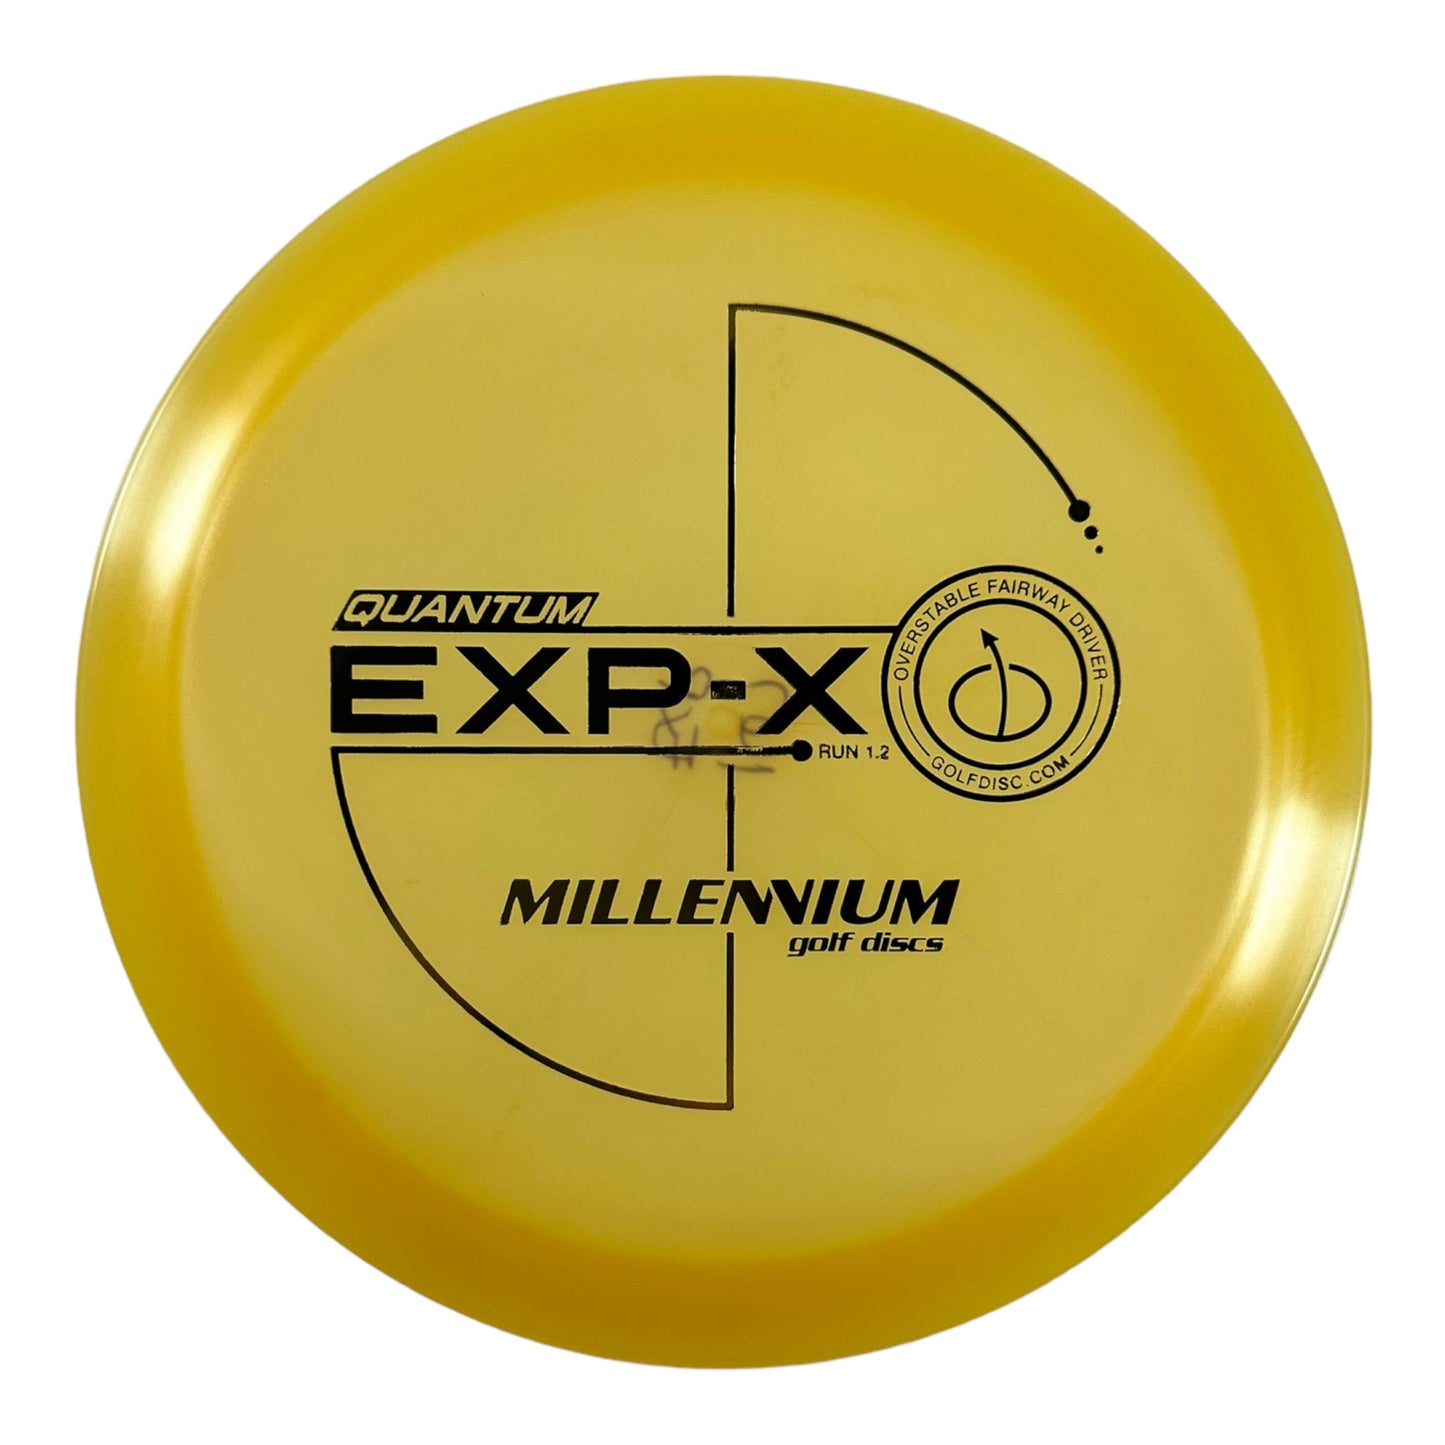 Millennium Golf Discs EXP-X | Quantum | Tan/Blue 171g Disc Golf